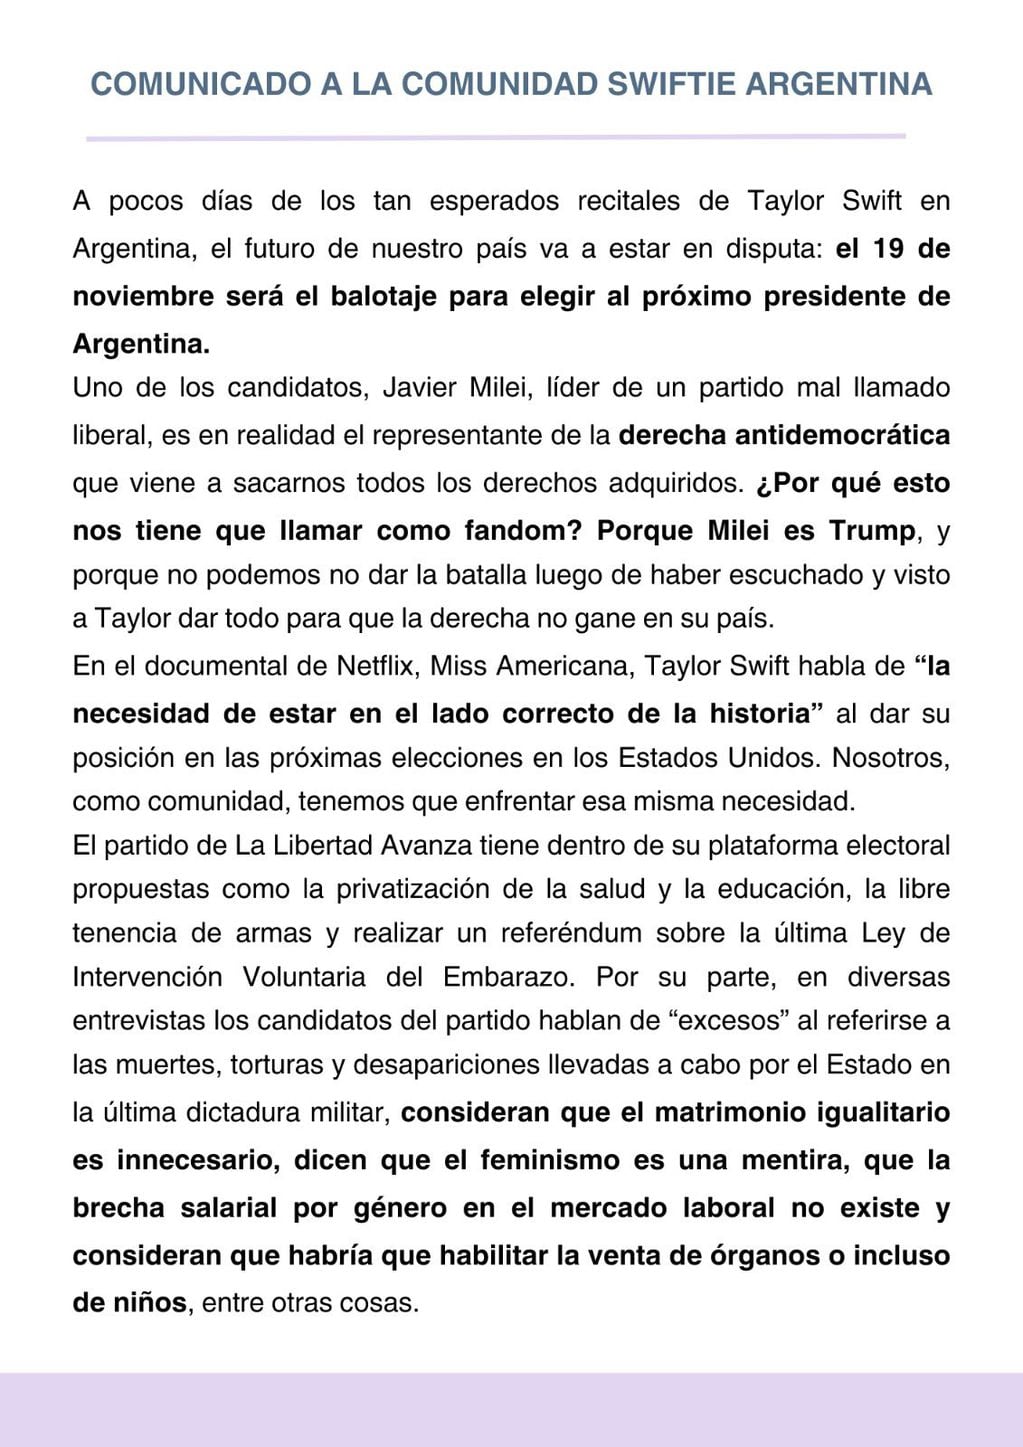 El comunicado de las swifties argentinas en contra de Milei. Foto: X.